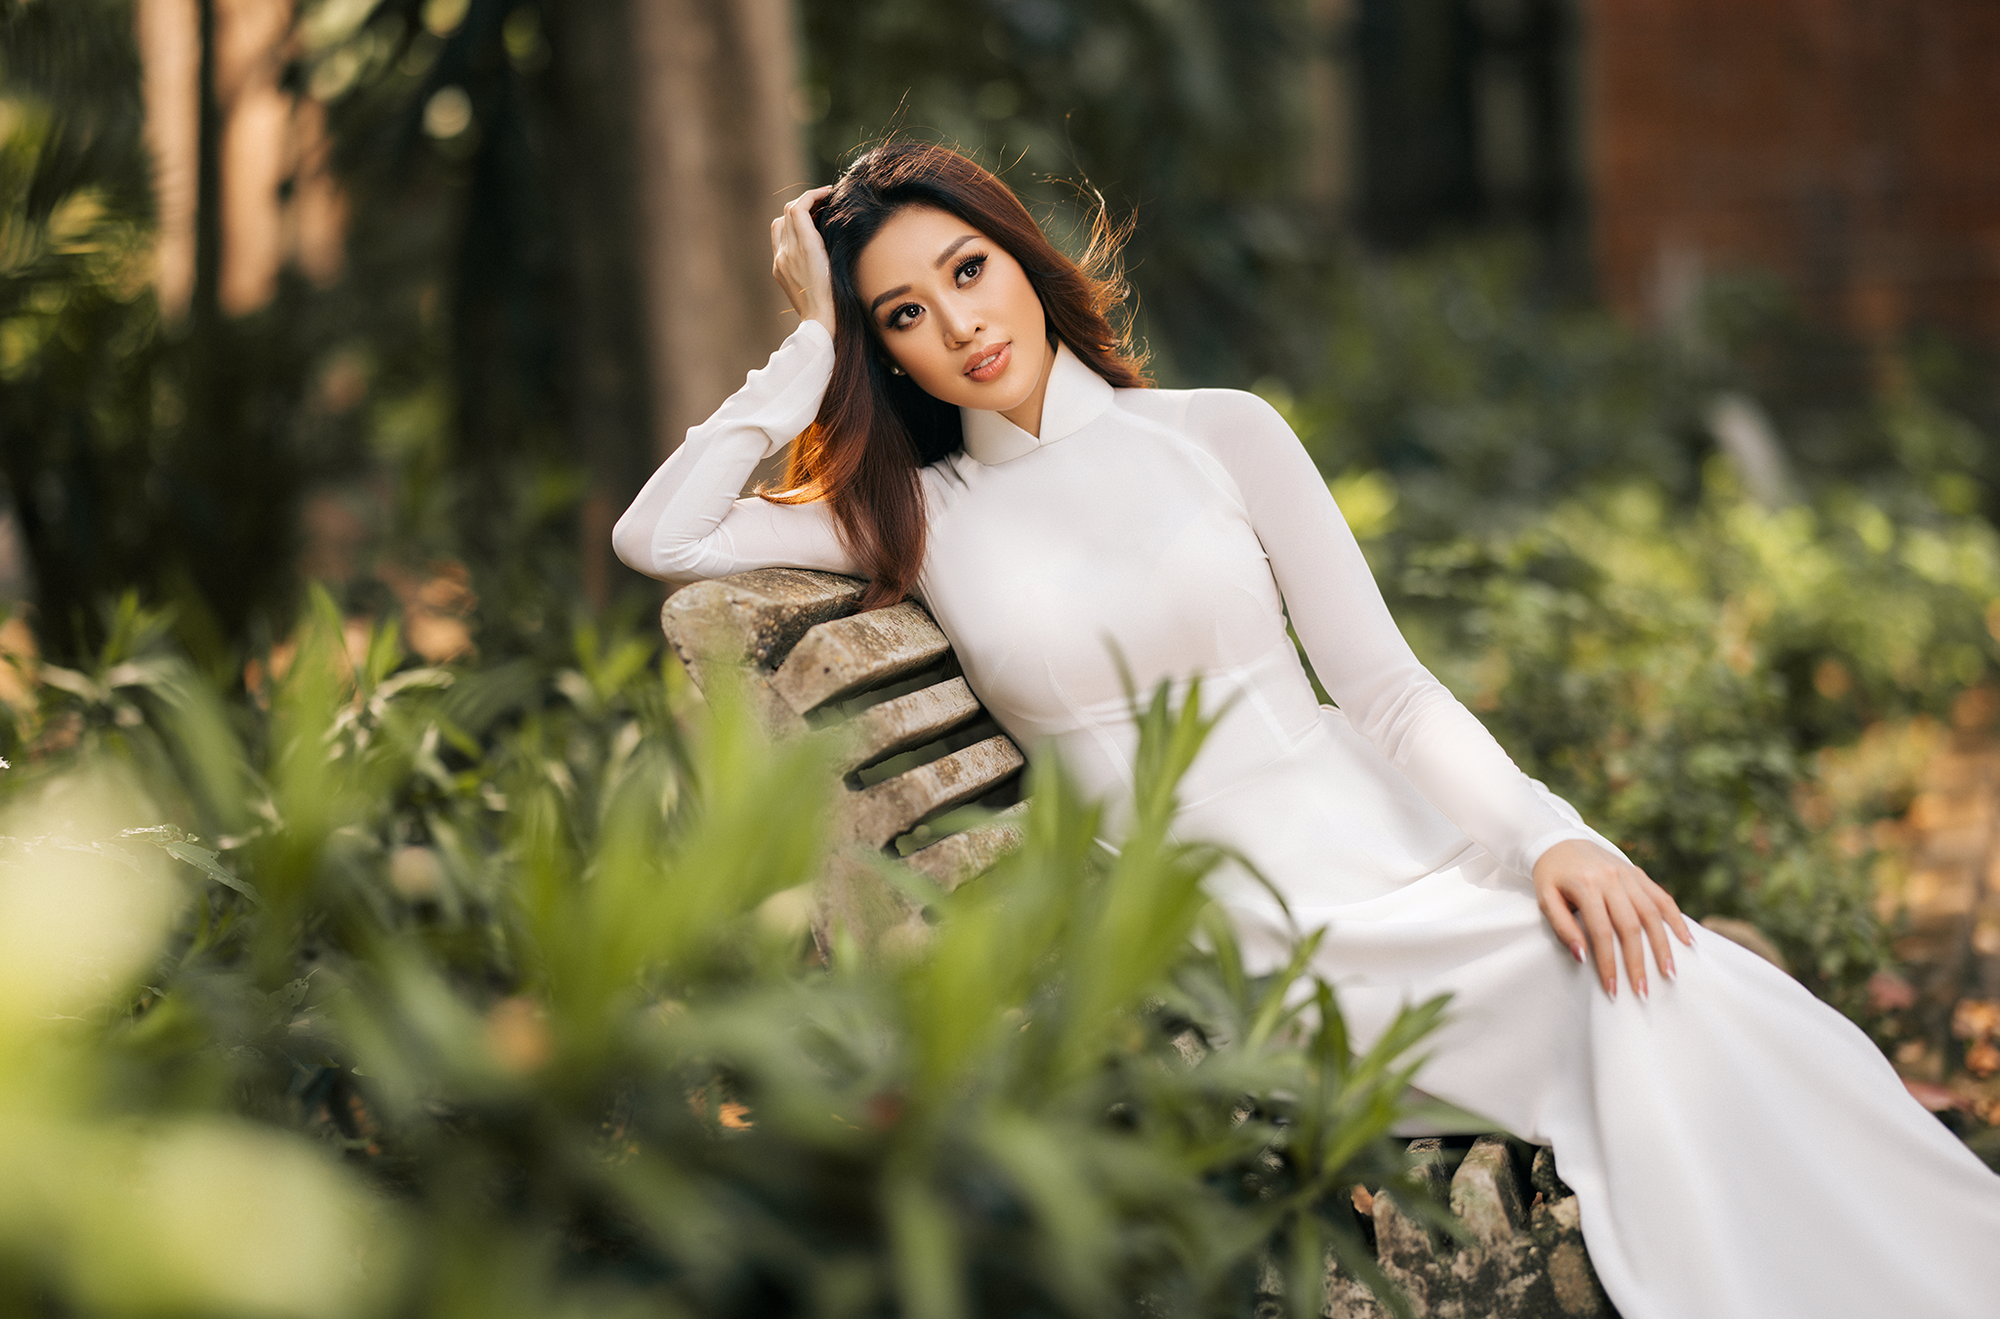 Hoa hậu Khánh Vân mặc áo dài trắng đẹp như mỹ nhân trong tranh - Ảnh 6.